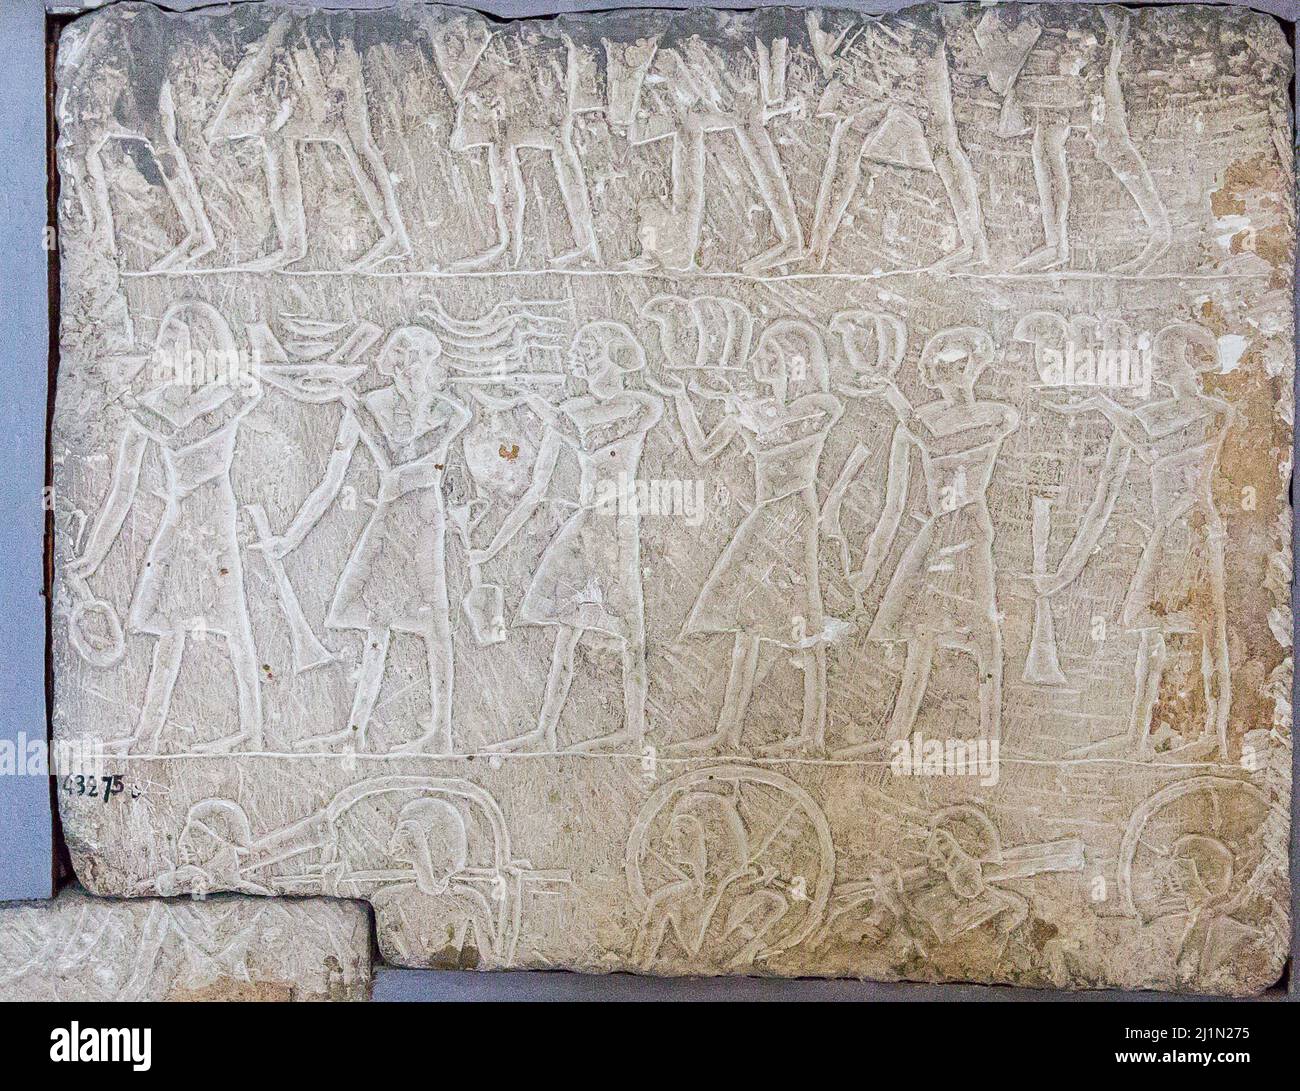 El Cairo, Museo Egipcio, relieve de la tumba de Kayri, Reino Nuevo, de Saqqara. Ofreciendo bringers, carro desmontado en la parte inferior. Foto de stock